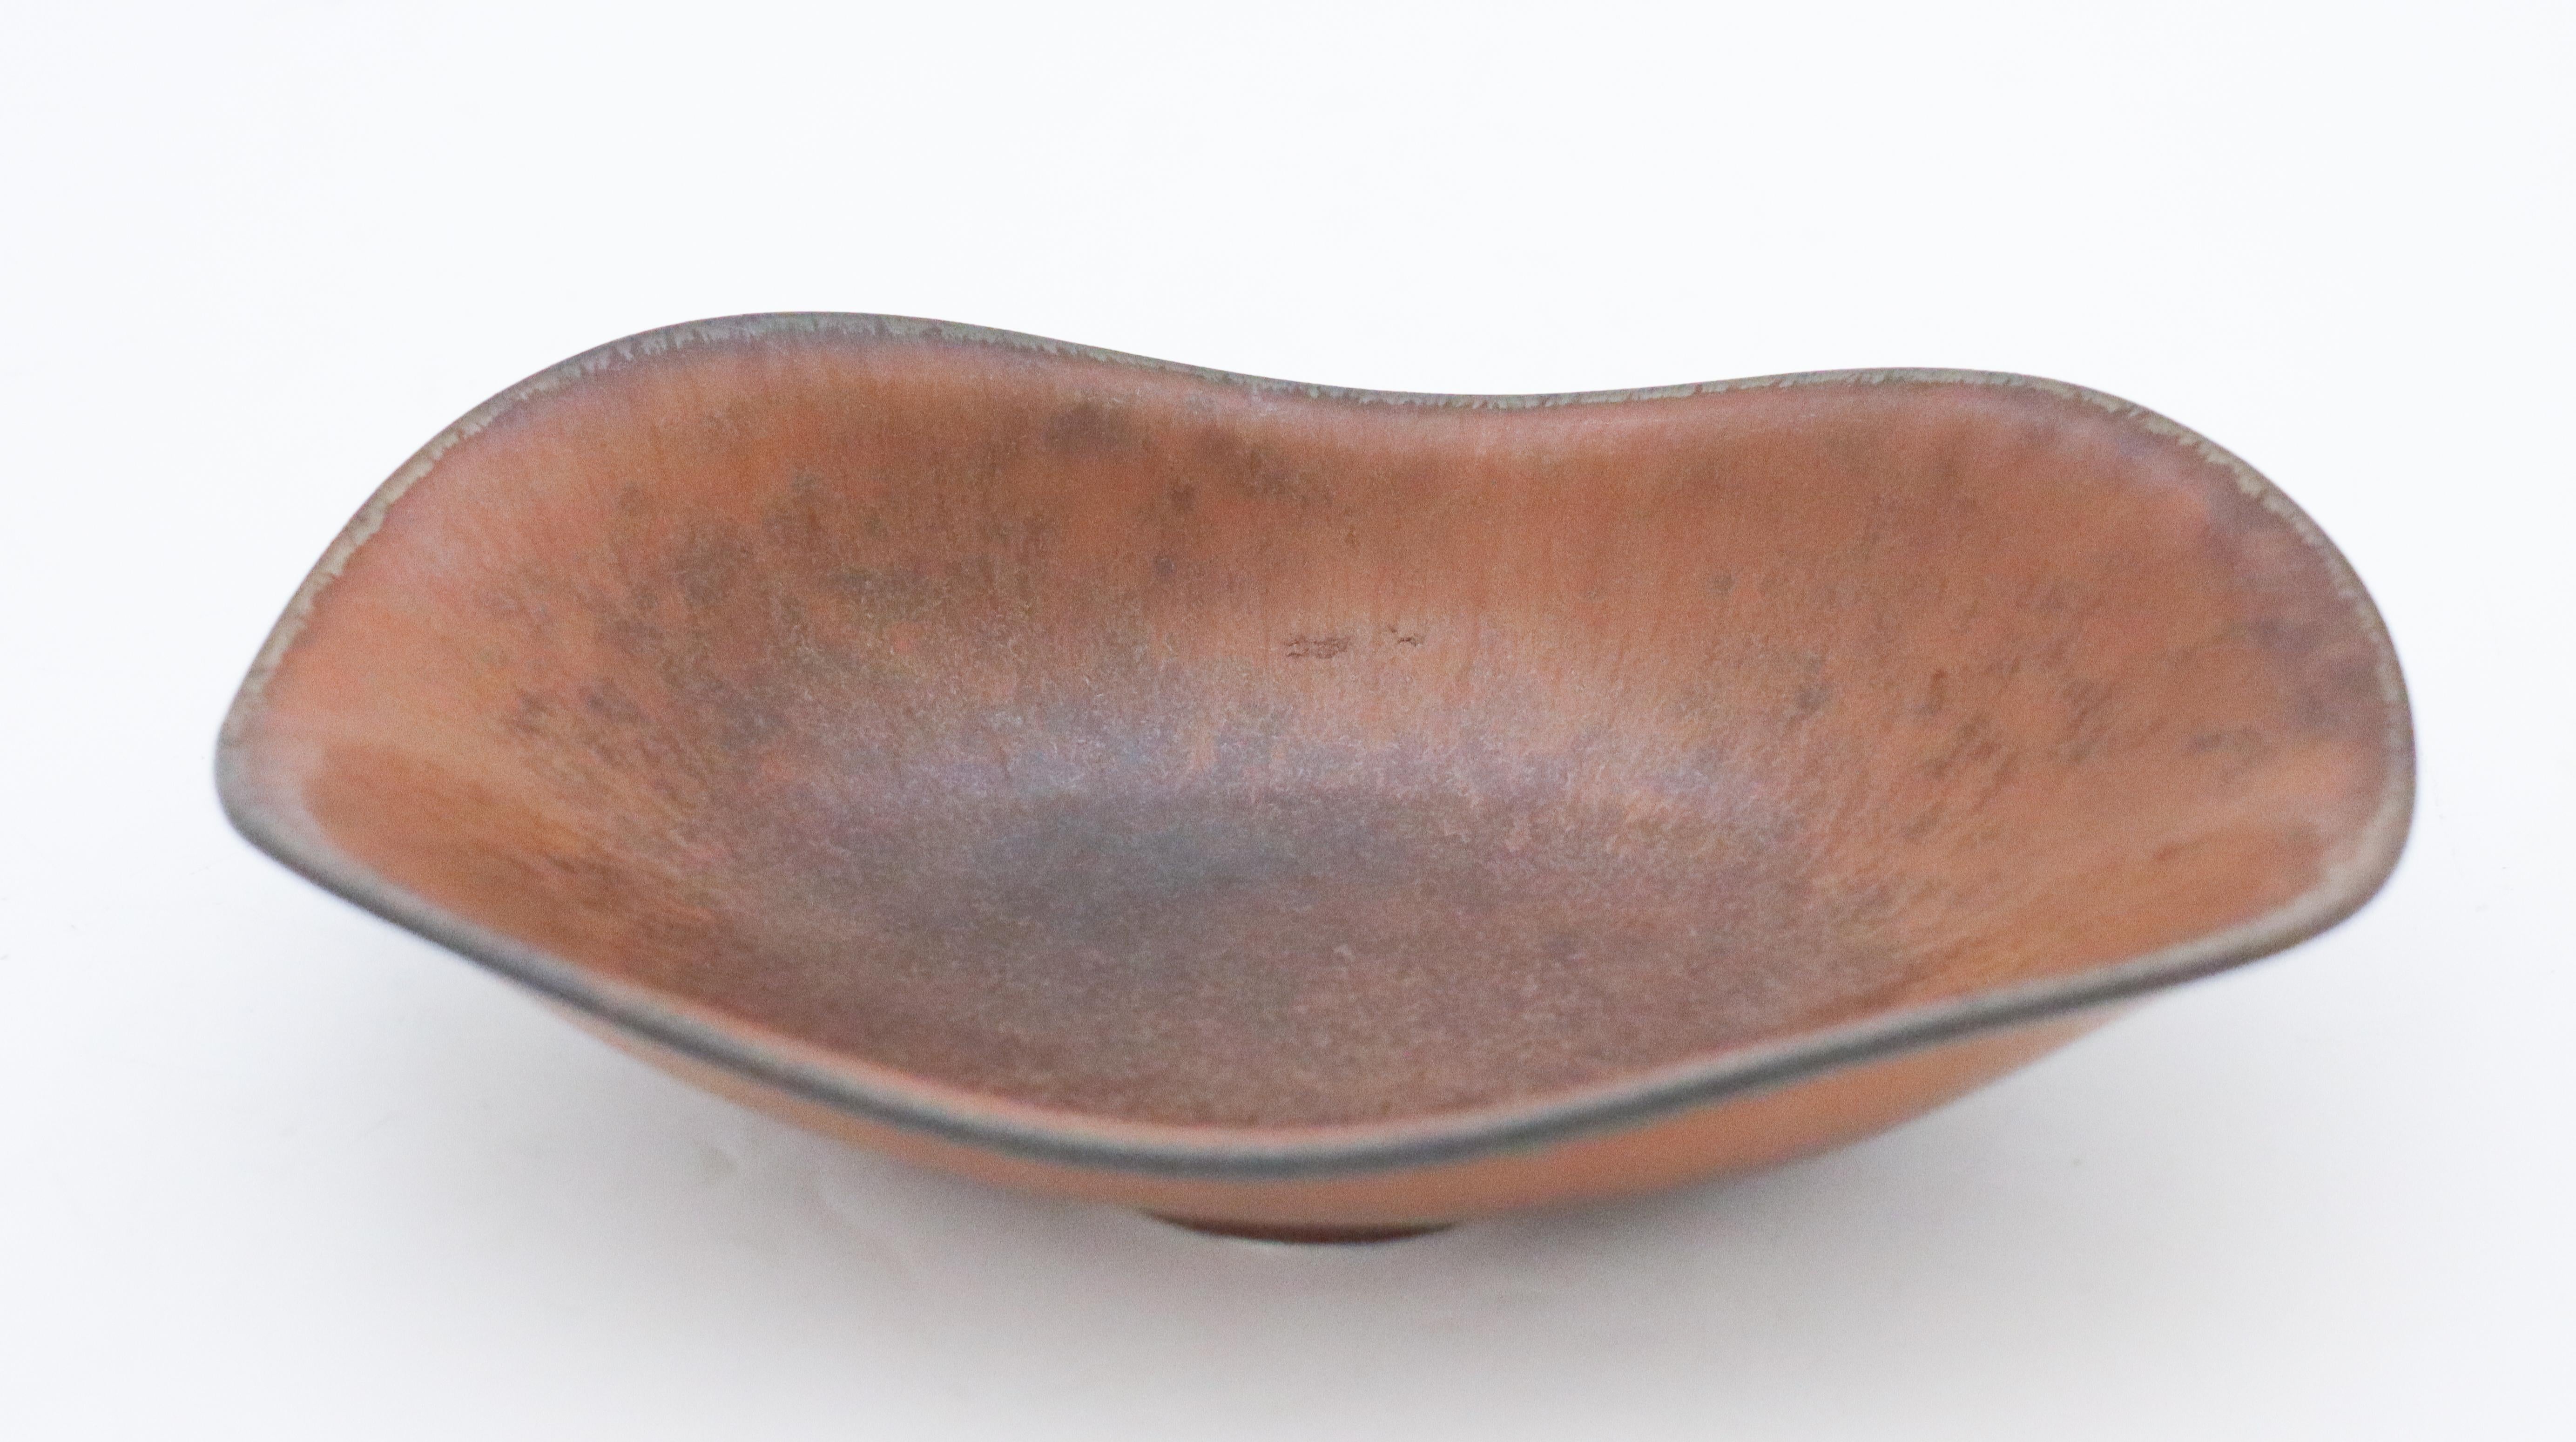 Un joli bol conçu par Gunnar Nylund chez Rörstrand, il mesure 17,5 x 11 cm de diamètre. Il a un beau glaçage brun de fourrure de har, il est en parfait état et marqué comme étant de qualité 1:st.

 Gunnar Nylund est né à Paris en 1904 de parents qui